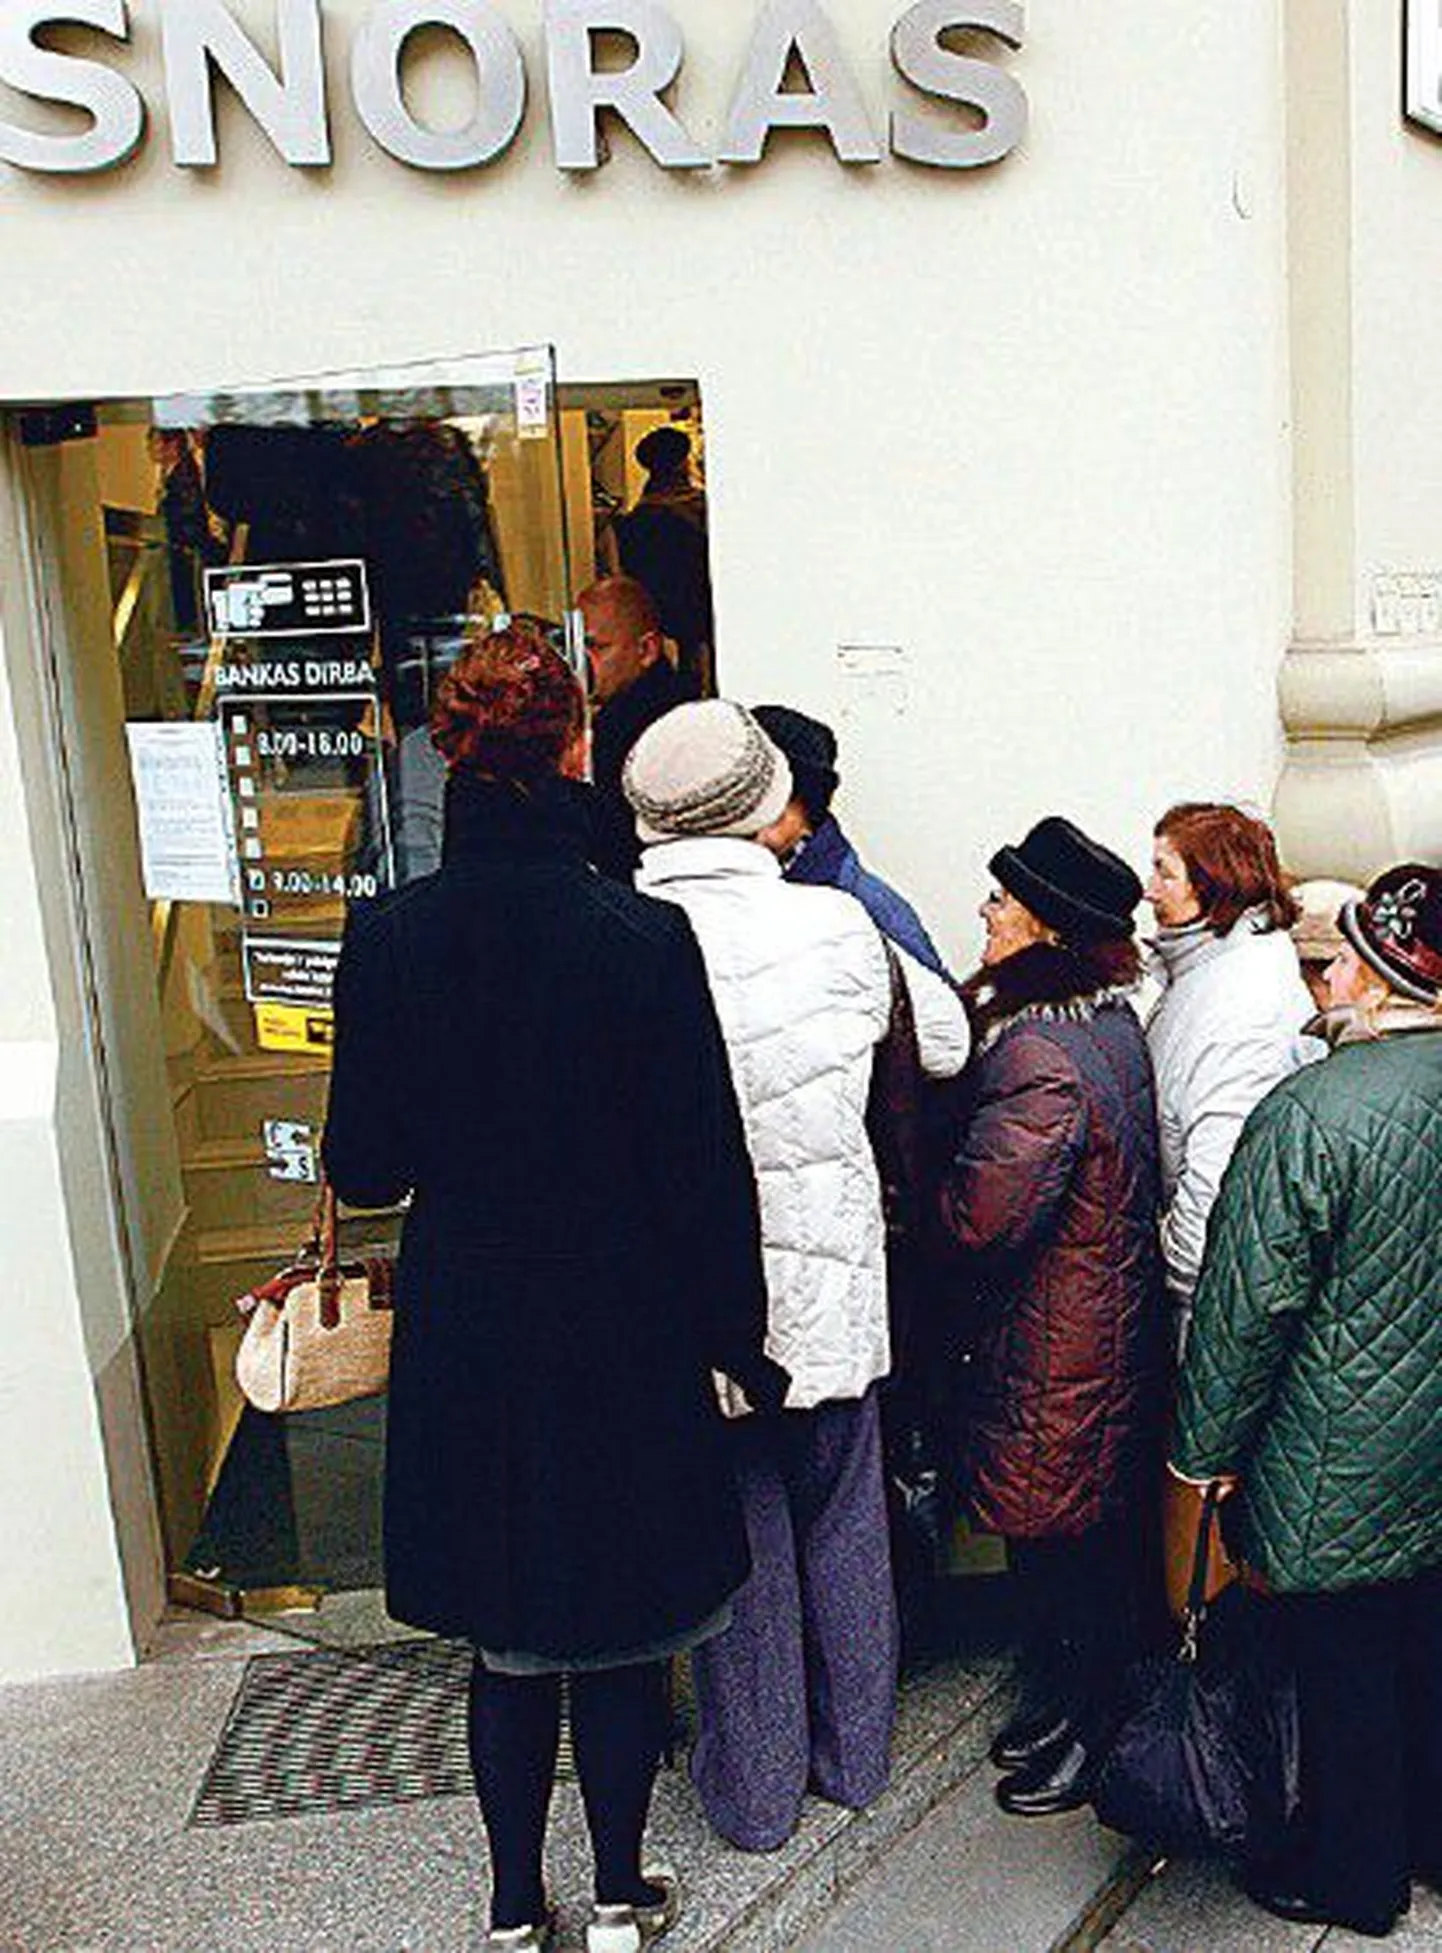 Банкротство банка Snoras в ноябре прошлого года вызвало панику среди клиентов. На фото: одна из контор банка в Вильнюсе.